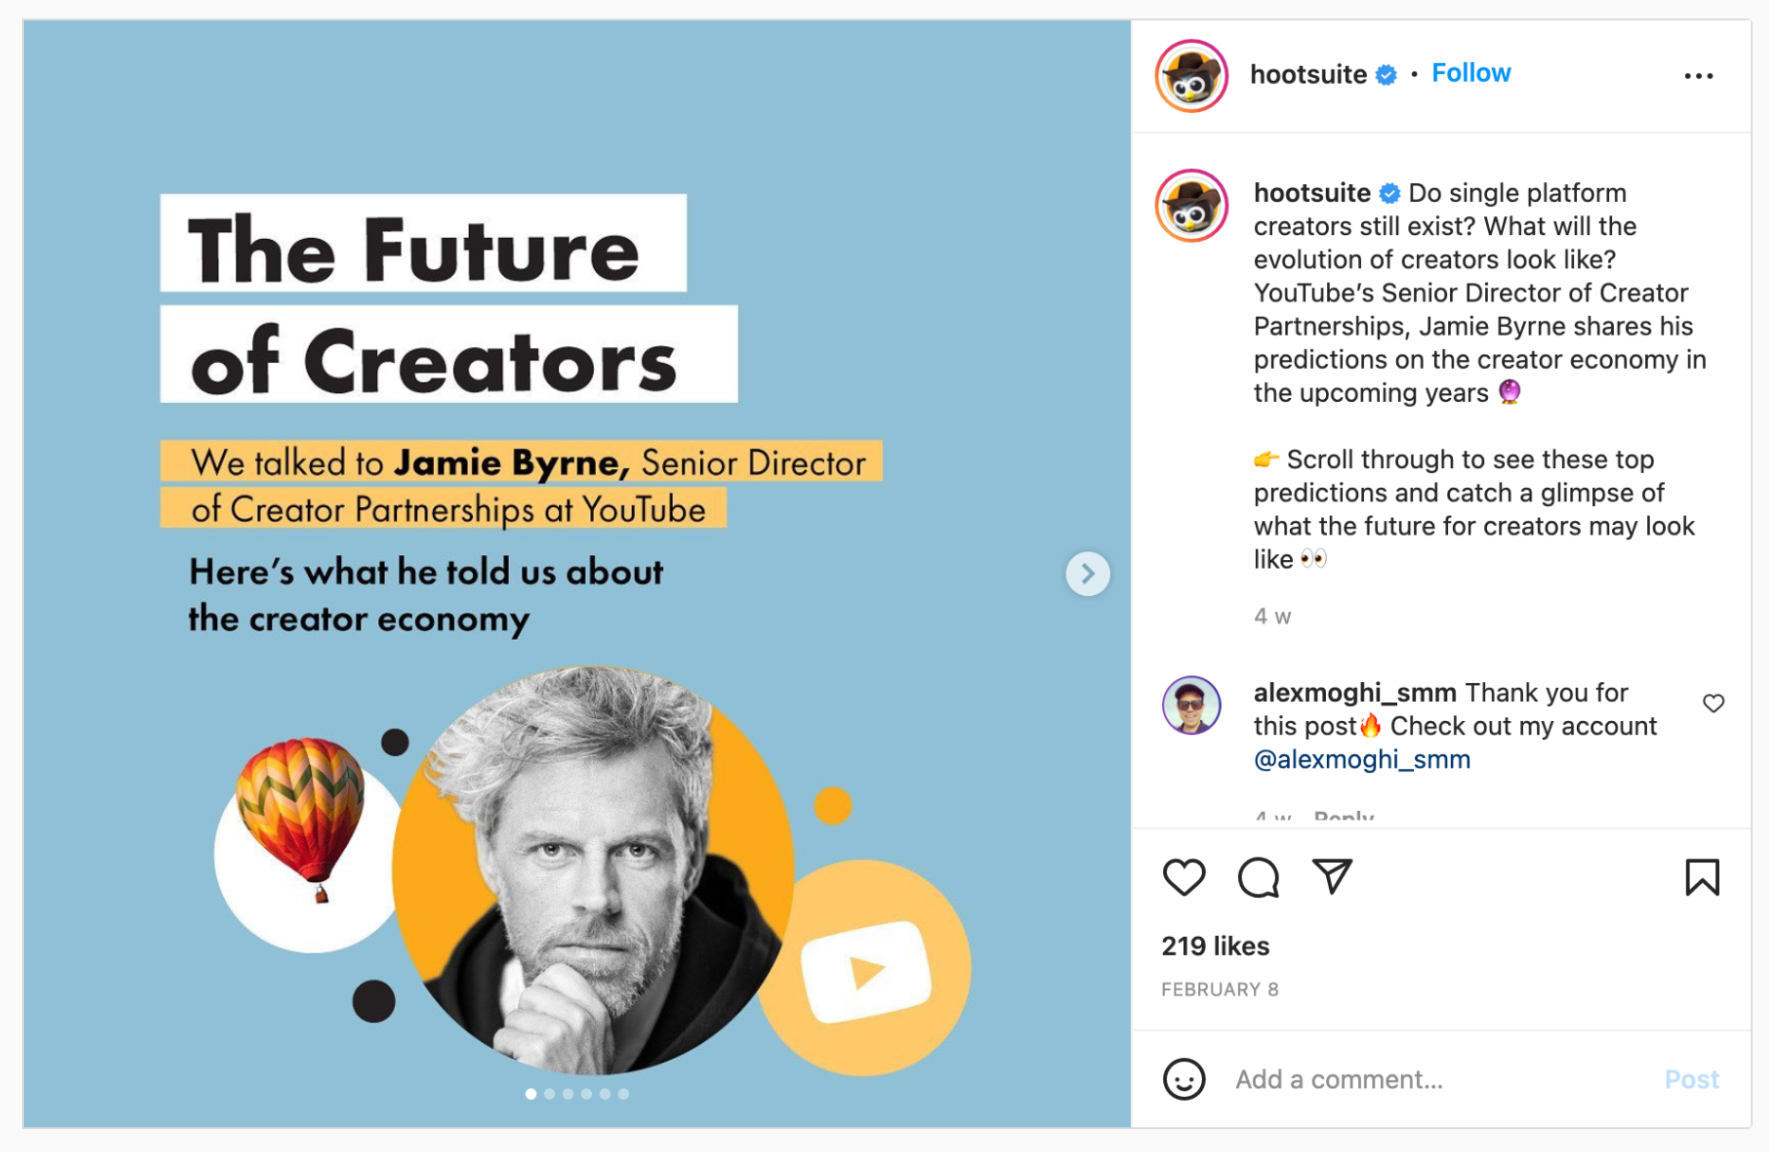 The Future of Creators Instagram carousel